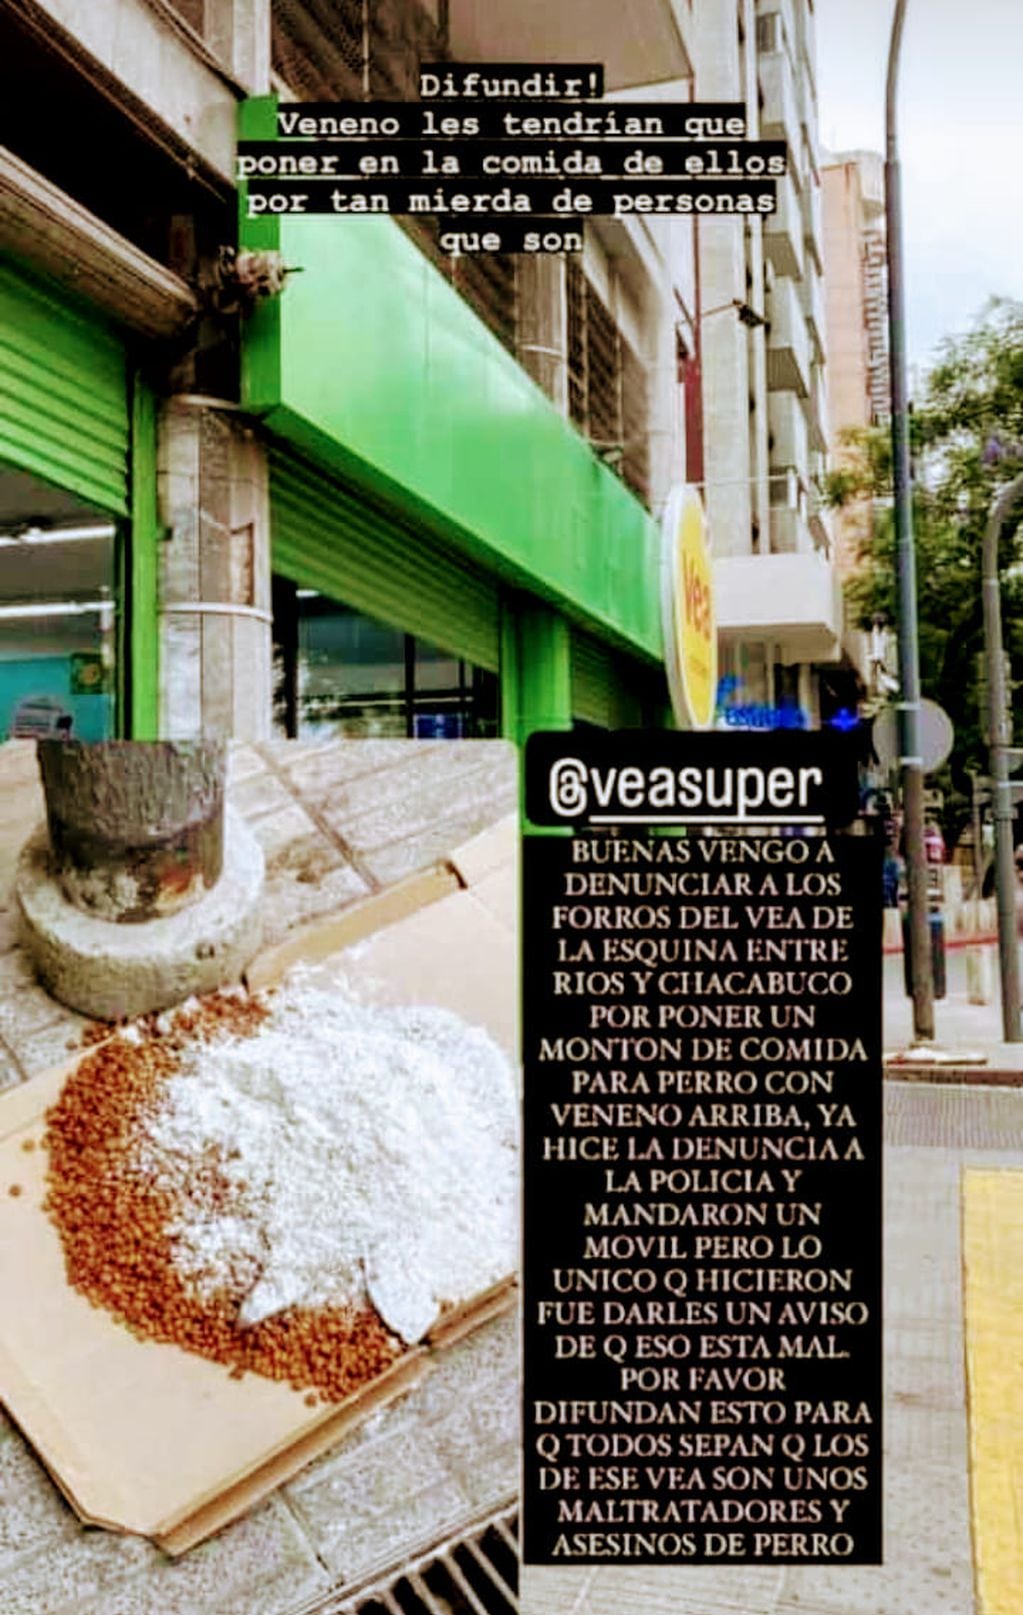 Un reconocido supermercado de Córdoba habría puesto alimento para perros con veneno en su vereda.